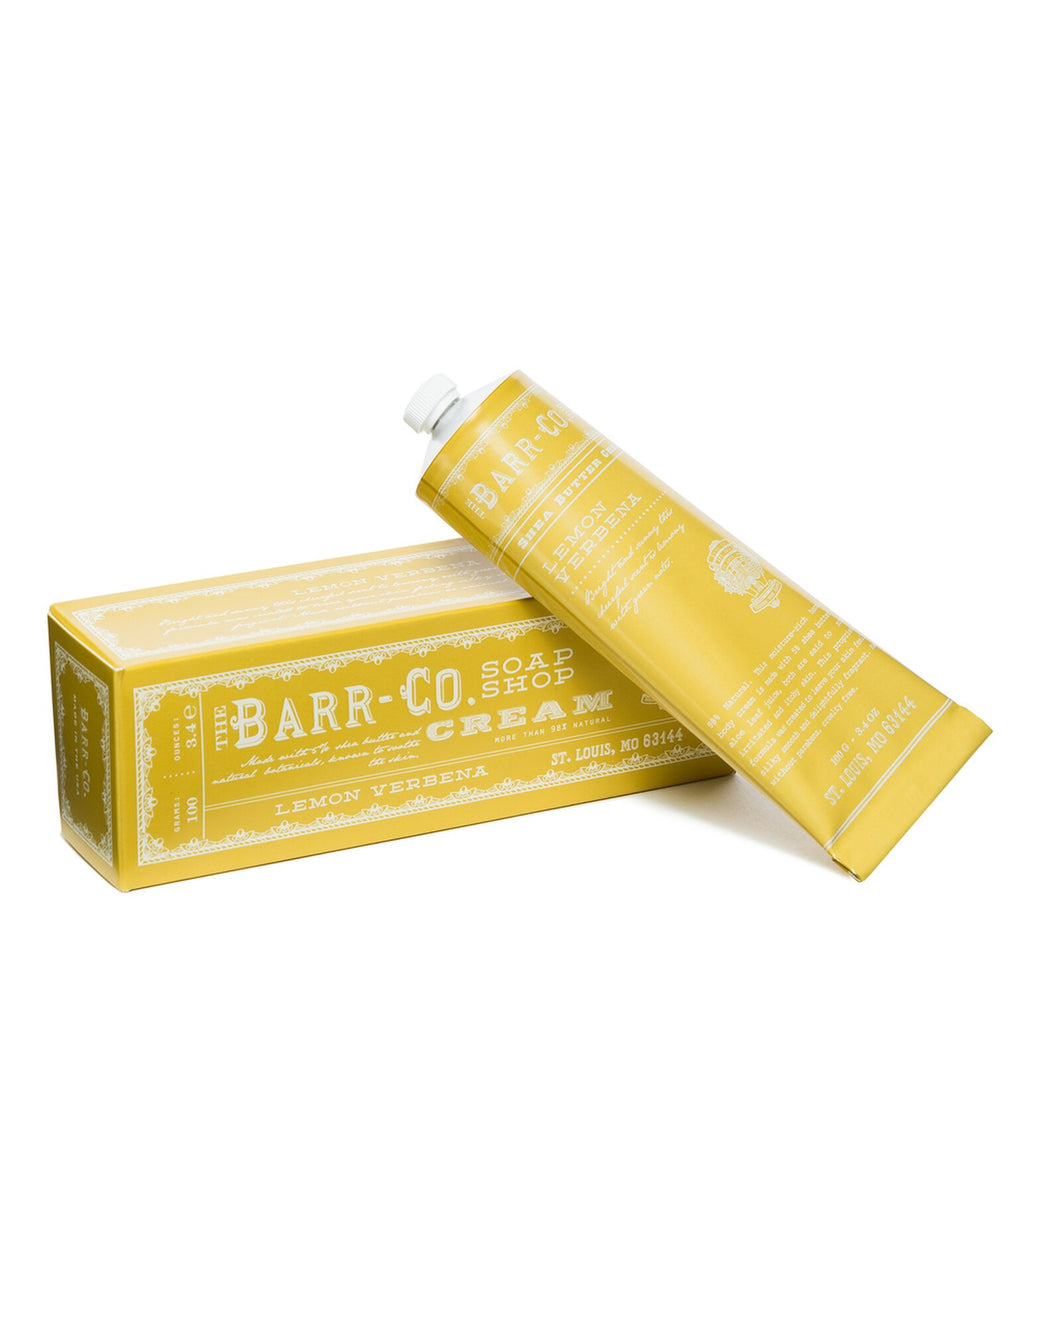 Barr-Co Lemon Verbena Hand Cream